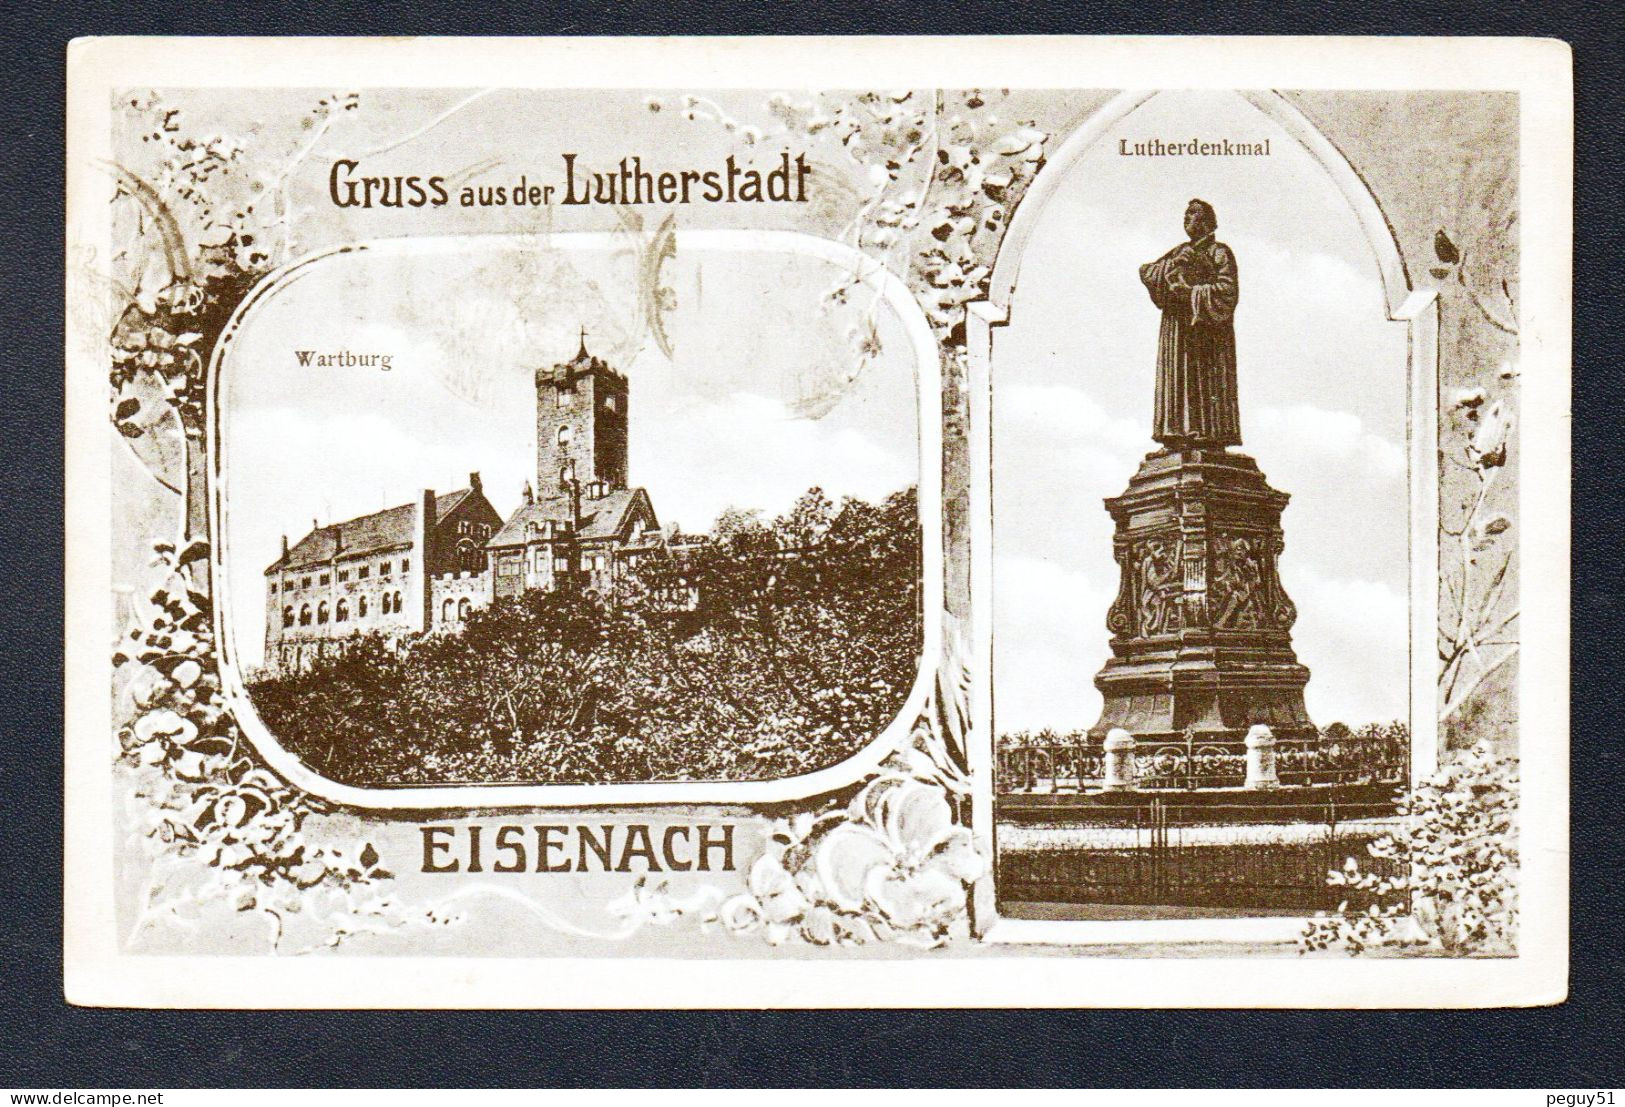 Eisenach. Gruss Aus Der Lutherstadt. Wartburg(1067). Lutherdenkmal (1483-1546), Excommunié Par Le Pape Léon X (1521) - Eisenach